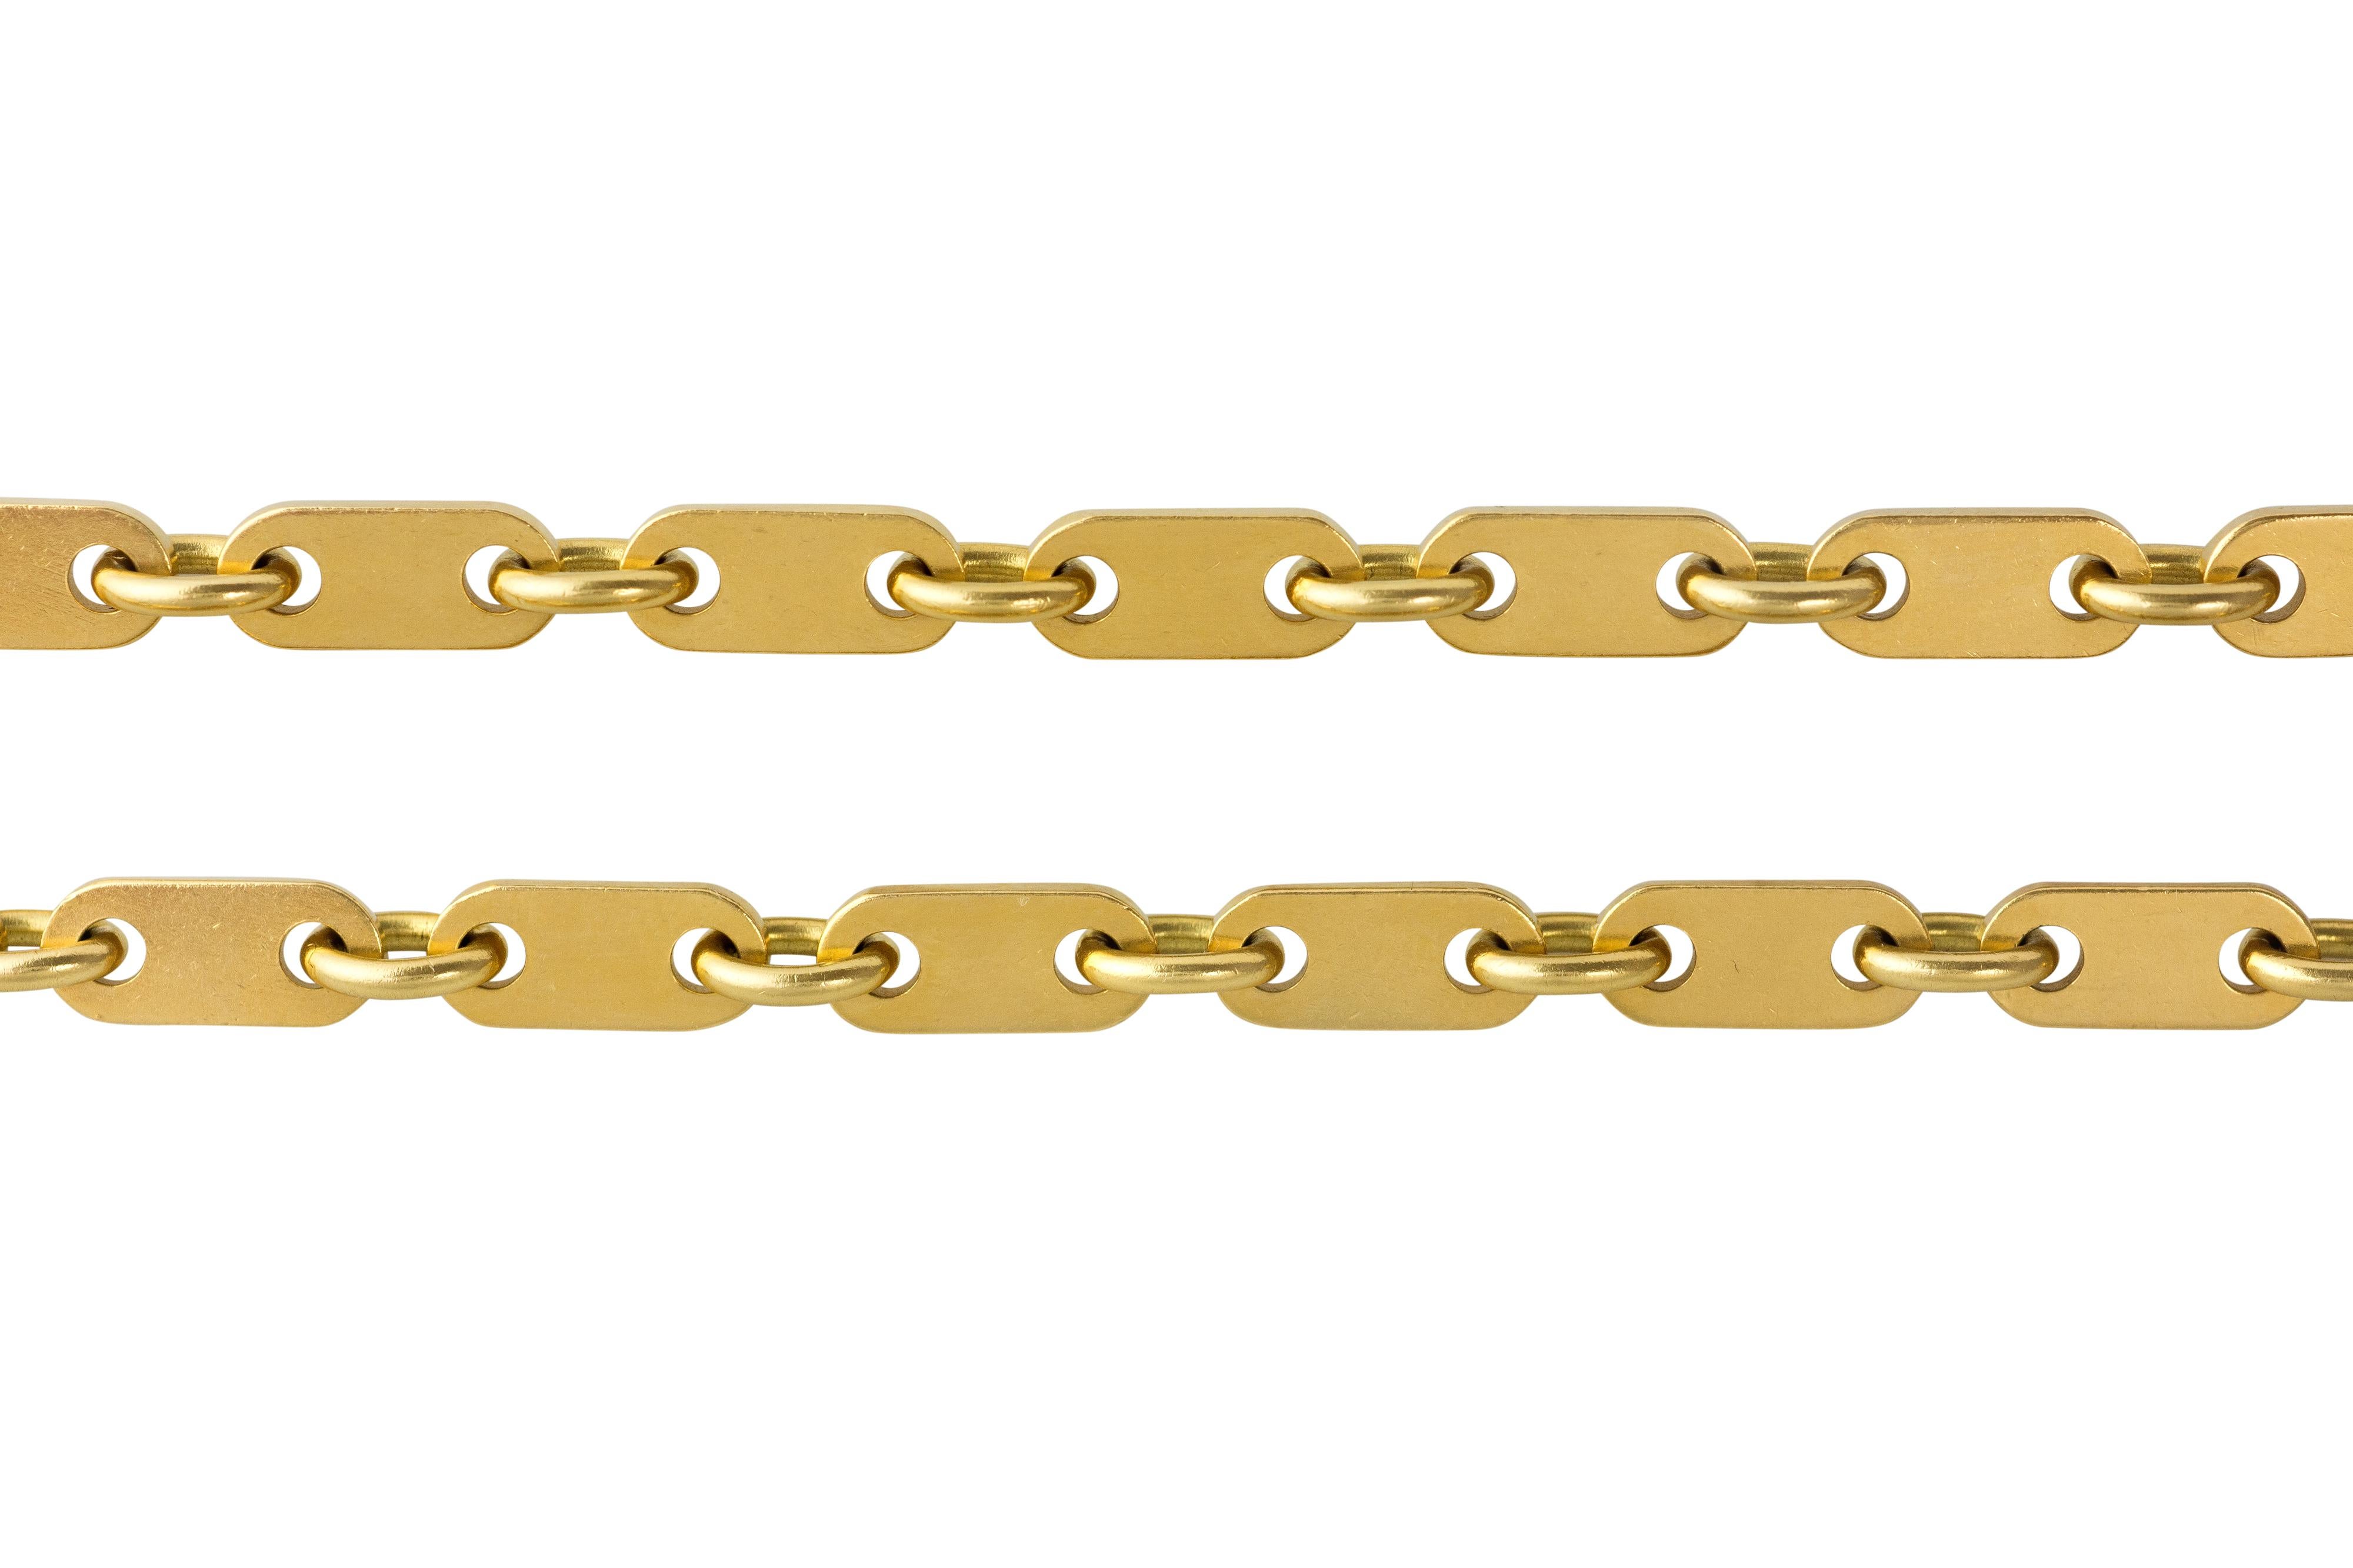 An 18 karat gold rectangular link chain, by Cartier London, 1976.

Chain measures 31.5